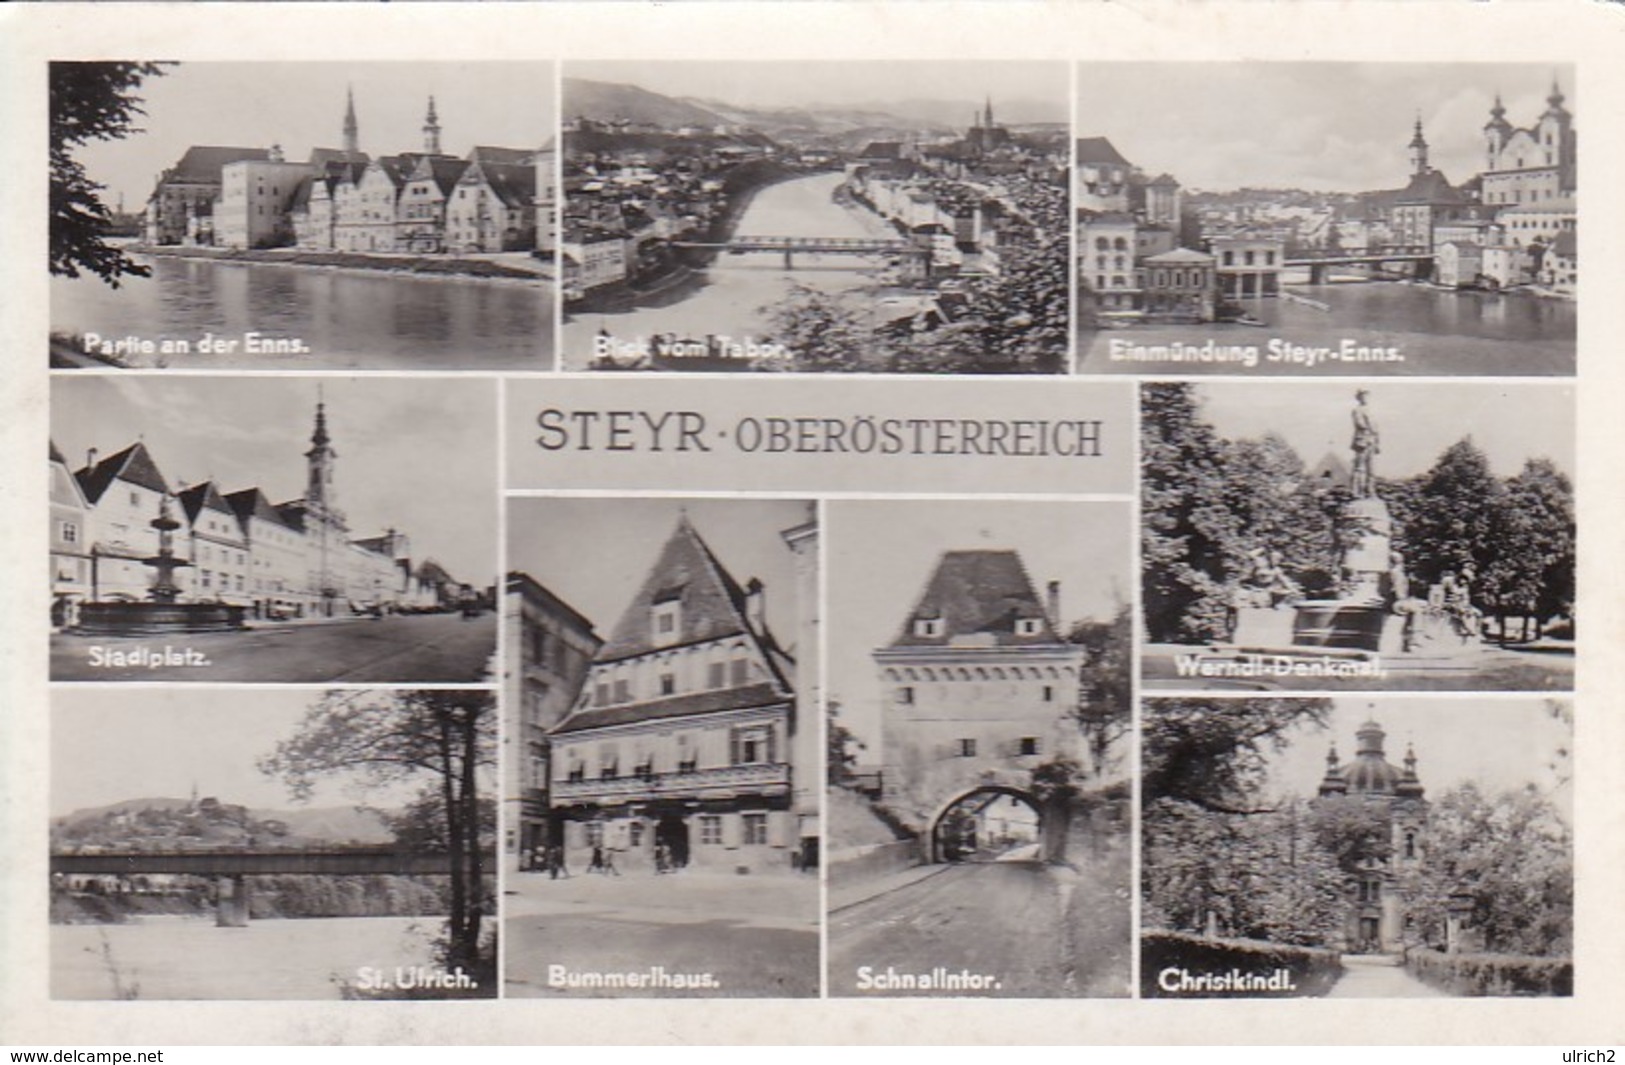 AK Steyr - Mehrbildkarte - Schnallntor Christkindl Bummerlhaus Werndl-Denkmal St. Ulrich - 1958 (41124) - Steyr